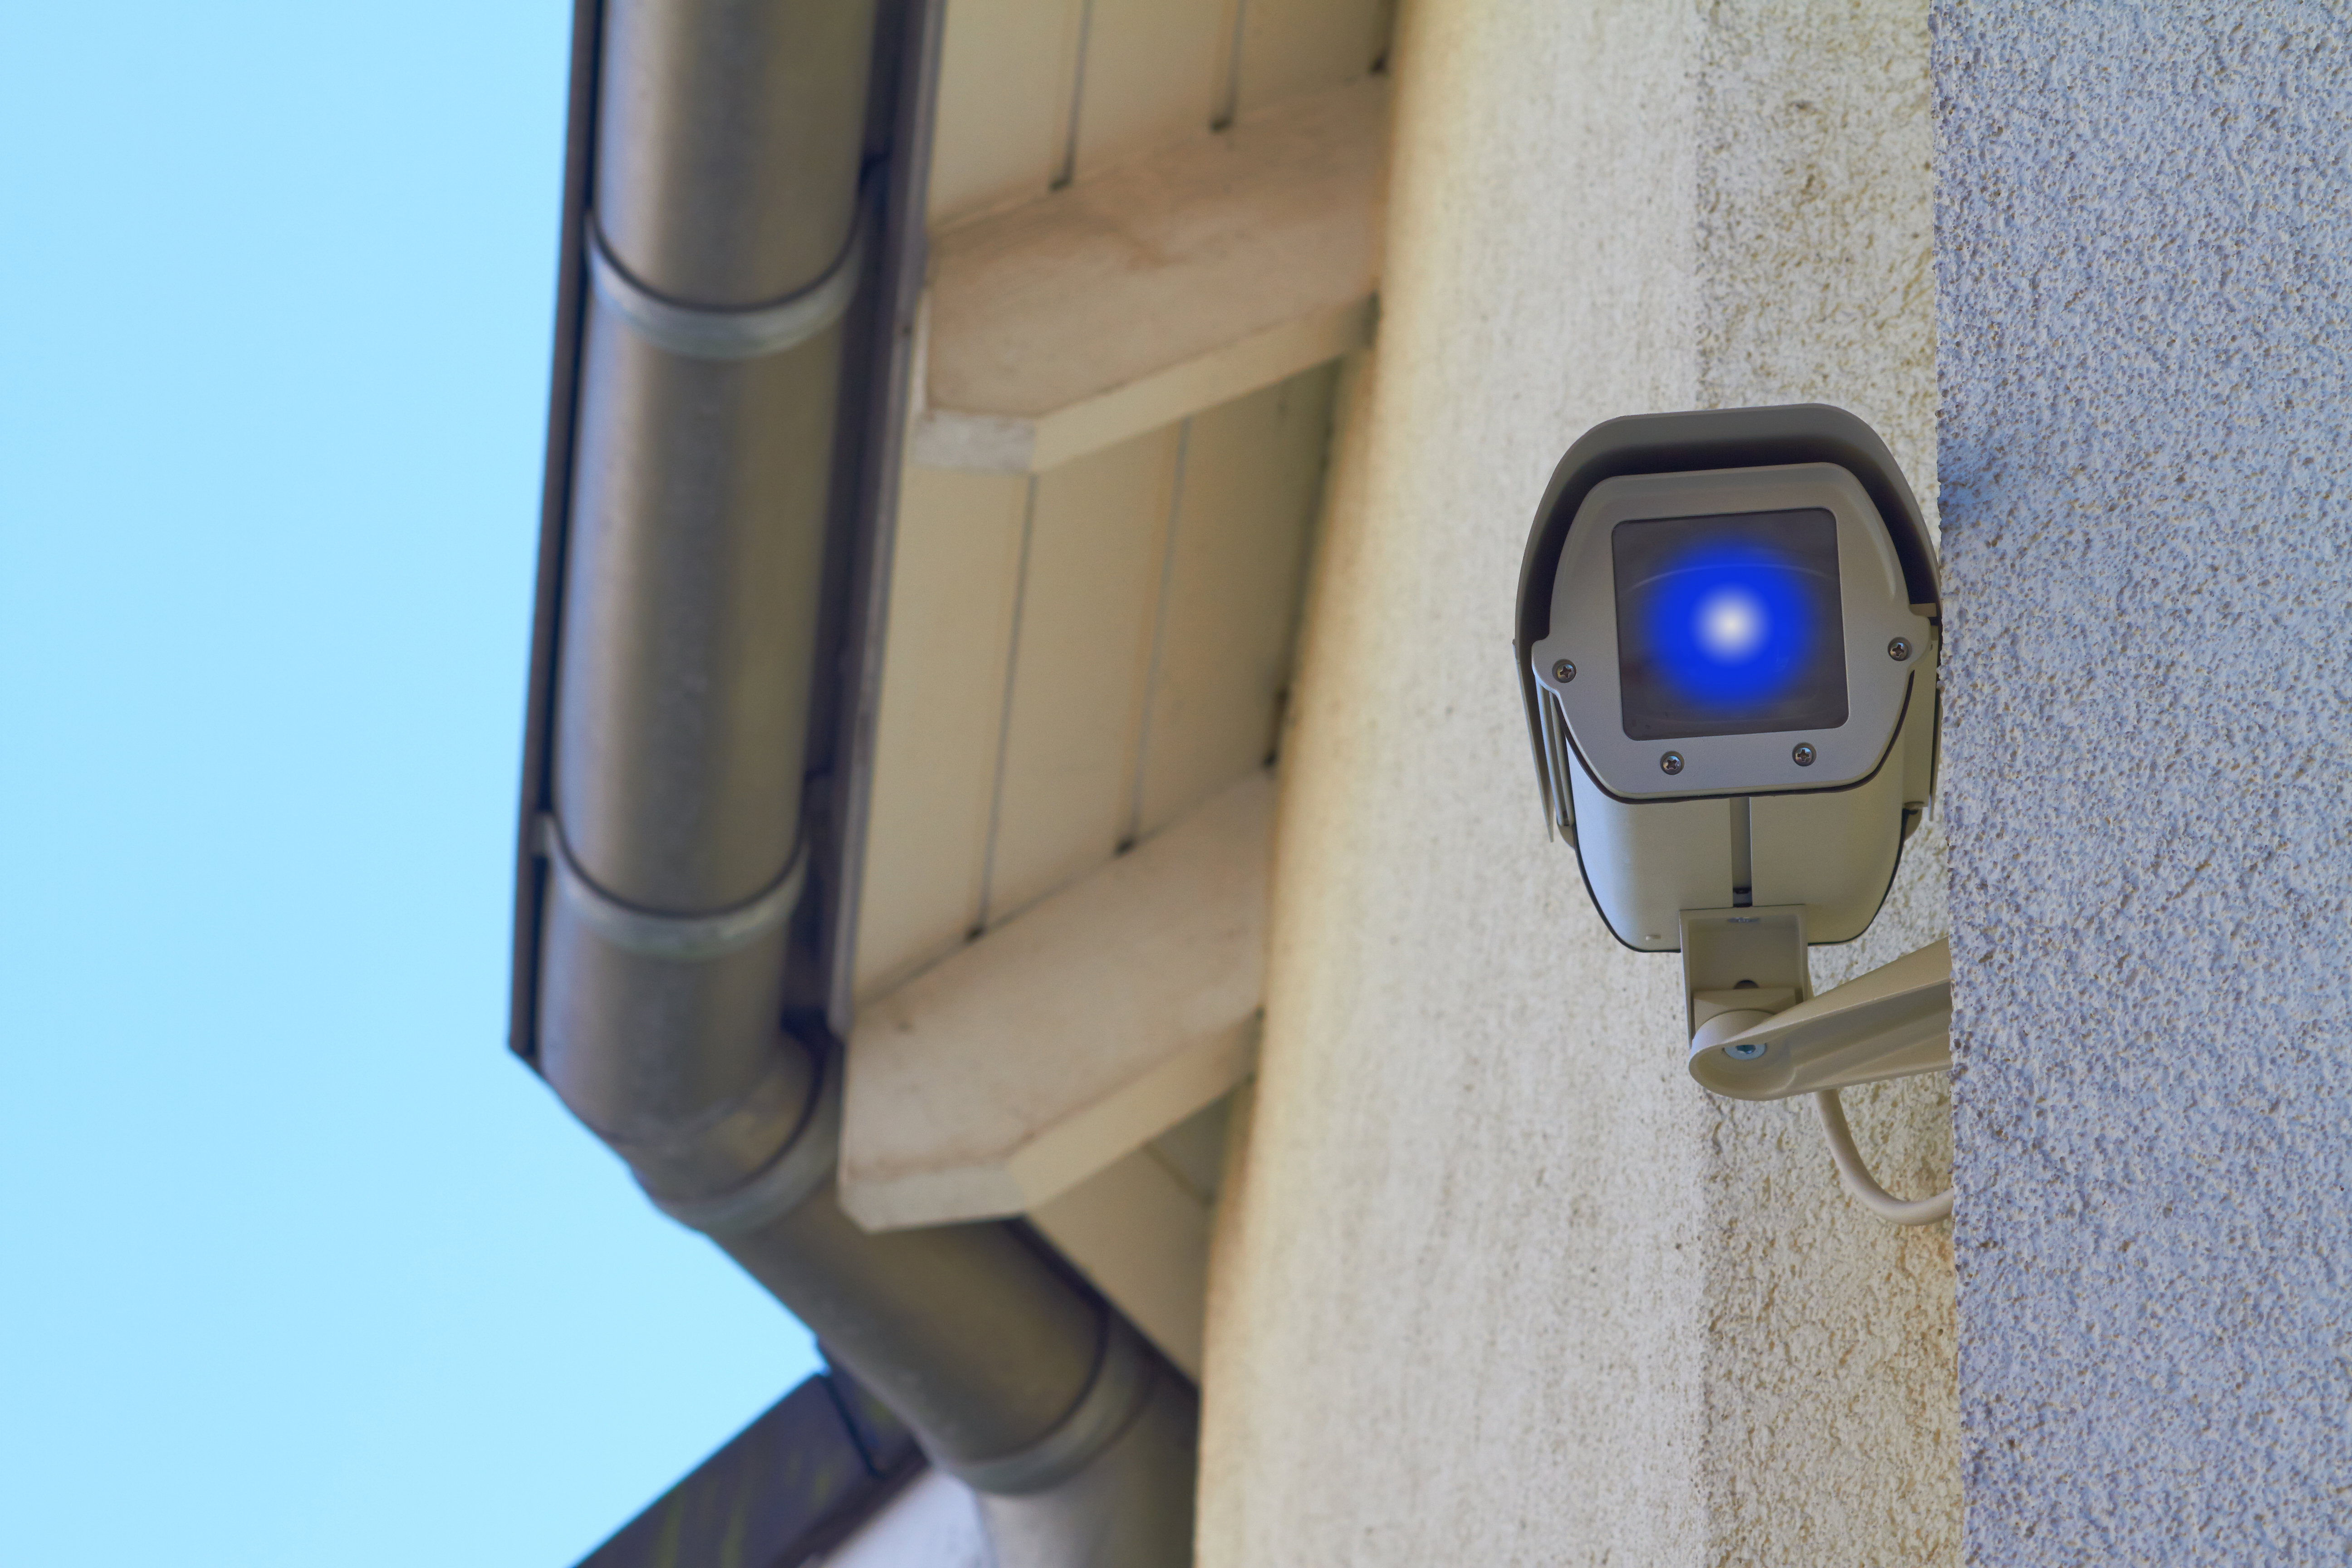 Eine Überwachungskamera | Quelle: Shutterstock